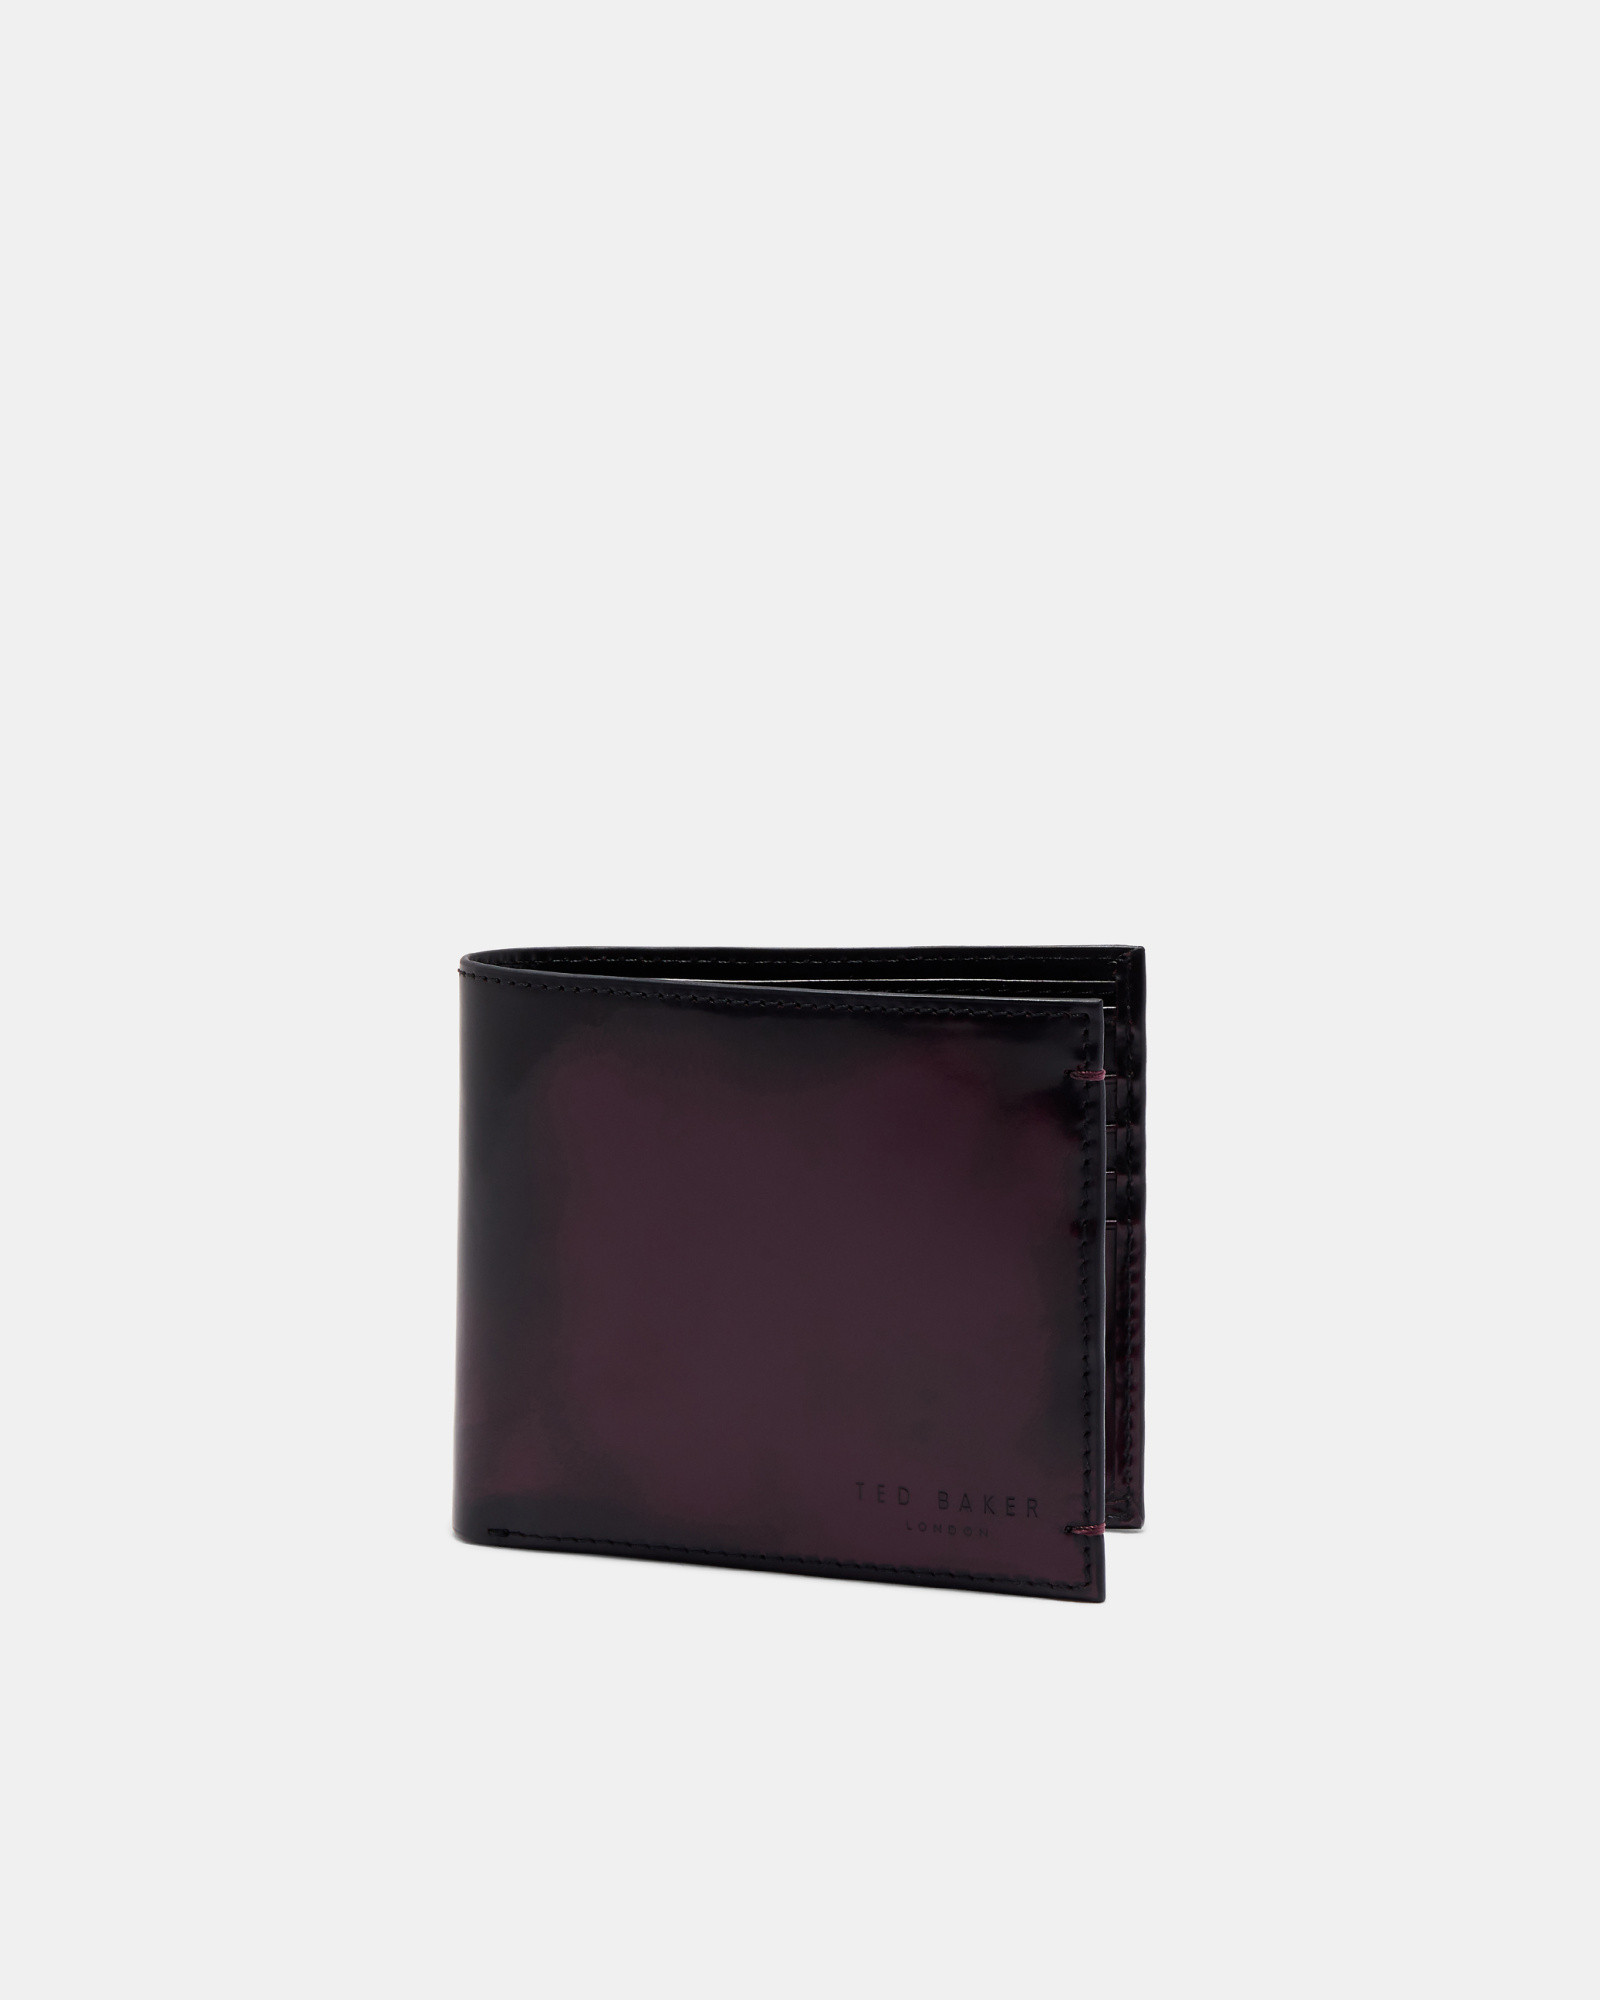 GRRAY Burnished leather bi-fold wallet